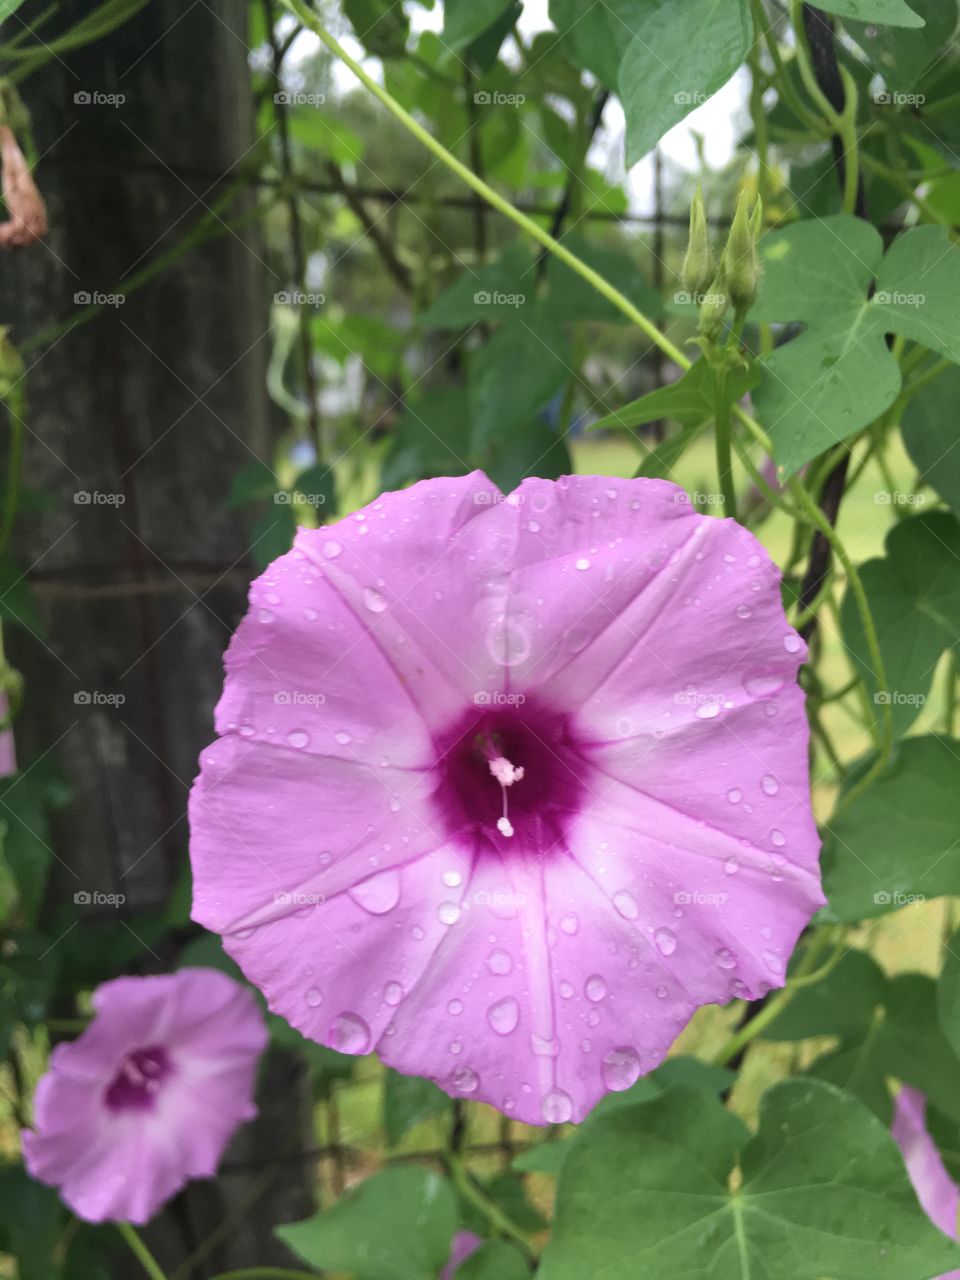 A pretty flower 🌸